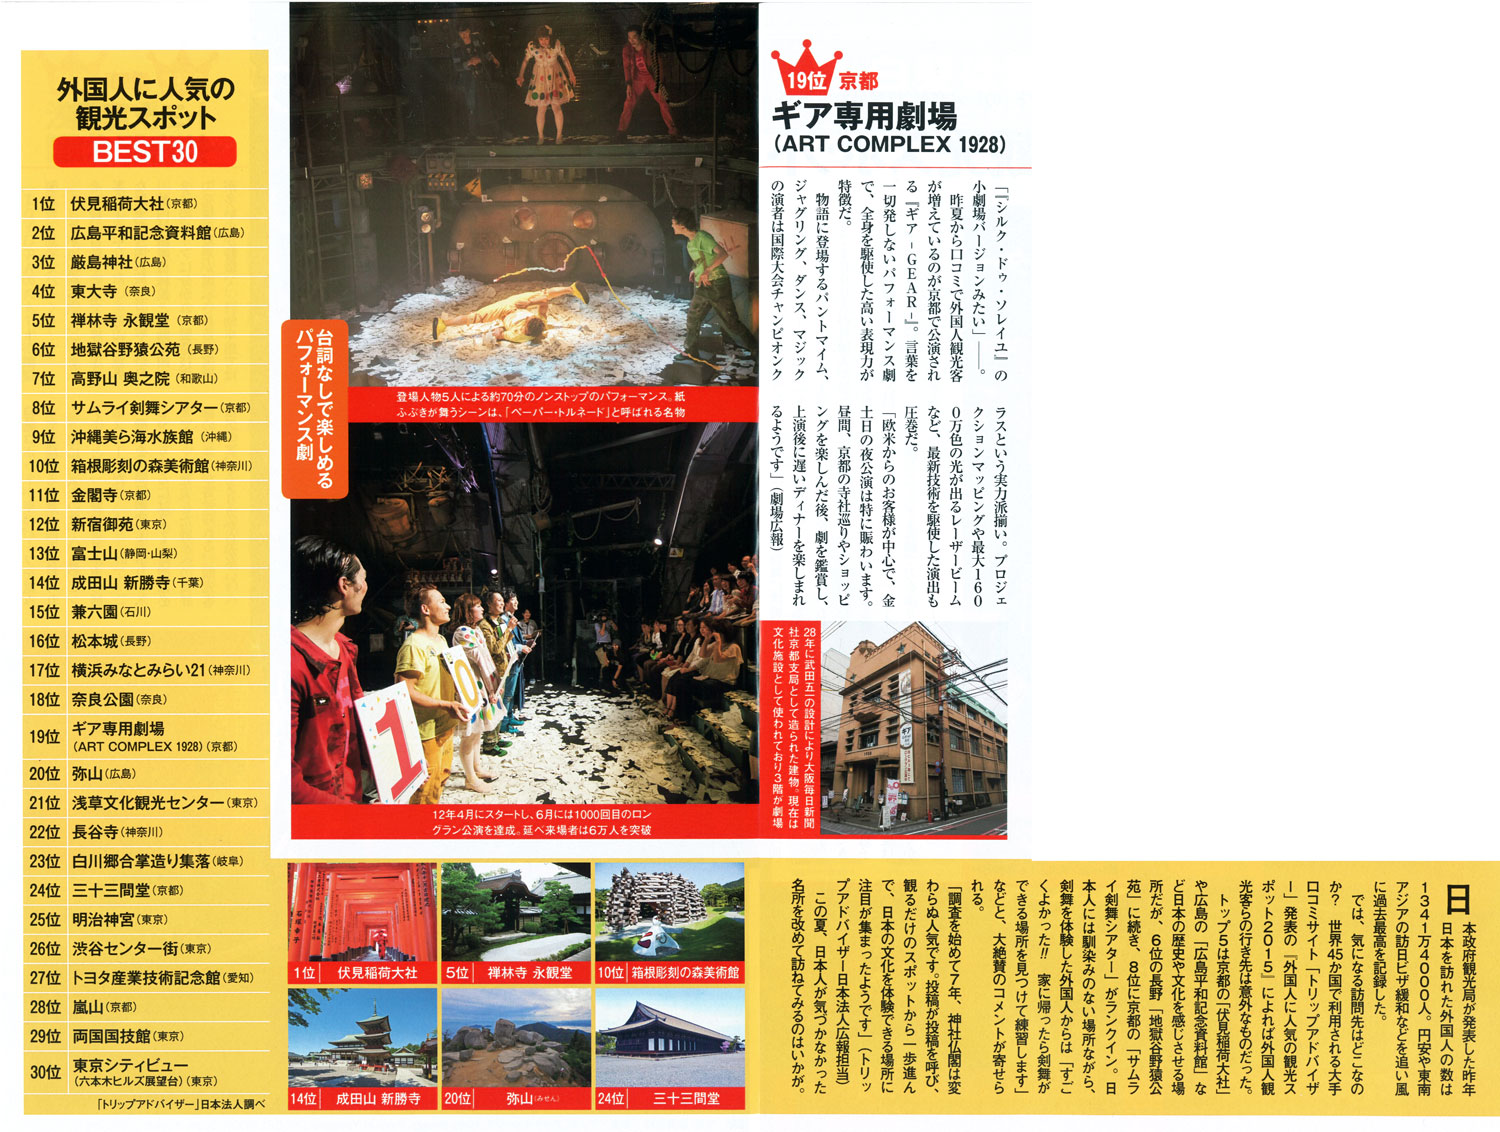 19位 京都 ギア専用劇場（ART COMPLEX 1928） 台詞なしで楽しめるパフォーマンス劇 「『シルク・ドゥ・ソレイユ』の小劇場バージョンみたい」――。 昨夏から口コミで外国人観光客が増えているのが京都で公演される『ギア-GEAR-』。 言葉を一切発しないパフォーマンス劇で、全身を駆使した高い表現力が特徴だ。 物語に登場するパントマイム、ジャグリング、ダンス、マジックの演者は国際大会チャンピオンクラスという実力派揃い。 プロジェクションマッピングや最大1600万色の光が出るレーザービームなど、最新技術を駆使した演出も圧巻だ。 「欧米からのお客様が中心で、金土日の夜公演は特に賑わいます。 昼間、京都の寺社巡りやショッピングを楽しんだ後、劇を鑑賞し、上演後に遅いディナーを楽しまれるようです」（劇場広報） 28年に武田五一の設計により大阪毎日新聞社京都支局として造られた建物。 現在は文化施設として使われており3階が劇場 登場人物5人による約70分のノンストップのパフォーマンス。 紙ふぶきが舞うシーンは、「ペーパー・トルネード」と呼ばれる名物 12年4月にスタートし、6月には1000回目のロングラン公演を達成。 延べ来場者は6万人を突破 外国人に人気の観光スポット BEST30 1位 伏見稲荷大社（京都） 2位 広島平和記念資料館（広島） 3位 厳島神社（広島） 4位 東大寺（奈良） 5位 禅林寺 永観堂（京都） 6位 地獄谷野猿公苑（長野） 7位 高野山 奥之院（和歌山） 8位 サムライ剣舞シアター（京都） 9位 沖縄美ら海水族館（沖縄） 10位 箱根彫刻の森美術館（神奈川） 11位 金閣寺（京都） 12位 新宿御苑（東京） 13位 富士山（静岡・山梨） 14位 成田山 新勝寺（千葉） 15位 兼六園（石川） 16位 松本城（長野） 17位 横浜みなとみらい21（神奈川） 18位 奈良公園（奈良） 19位 ギア専用劇場（ART COMPLEX 1928）（京都） 20位 弥山（広島） 21位 浅草文化観光センター（東京） 22位 長谷寺（神奈川） 23位 白川郷合掌造り集落（岐阜） 24位 三十三間堂（京都） 25位 明治神宮（東京） 26位 渋谷センター街（東京） 27位 トヨタ産業技術記念館（愛知） 28位 嵐山（京都） 29位 両国国技館（東京） 30位 東京シティビュー（六本木ヒルズ展望台）（東京） 「トリップアドバイザー」日本法人調べ 日本政府観光局が発表した昨年日本を訪れた外国人の数は1341万4000人。 円安や東南アジアの訪日ビザ緩和などを追い風に過去最高を記録した。 では、気になる訪問先はどこなのか？ 世界45か国で利用される大手口コミサイト「トリップアドバイザー」発表の『外国人に人気の観光スポット2015』によれば外国人観光客らの行き先は意外なものだった。 トップ5は京都の「伏見稲荷大社」や広島の「広島平和記念資料館」など日本の歴史や文化を感じさせる場所だが、6位の長野「地獄谷野猿公苑」に続き、8位に京都の「サムライ剣舞シアター」がランクイン。 日本人には馴染みのない場所ながら、剣舞を体験した外国人からは「すごくよかった!! 家に帰ったら剣舞ができる場所を見つけて練習します」などと、大絶賛のコメントが寄せられる。 「調査を始めて7年、神社仏閣は変わらぬ人気です。 投稿が投稿を呼び、観るだけのスポットから一歩進んで、日本の文化を体験できる場所に注目が集まったようです」（トリップアドバイザー日本法人広報担当） この夏、日本人が気づかなかった名所を改めて訪ねてみるのはいかが。 1位 伏見稲荷大社 5位 禅林寺 永観堂 10位 箱根彫刻の森美術館 14位 成田山 新勝寺 20位 弥山（みせん） 24位 三十三間堂